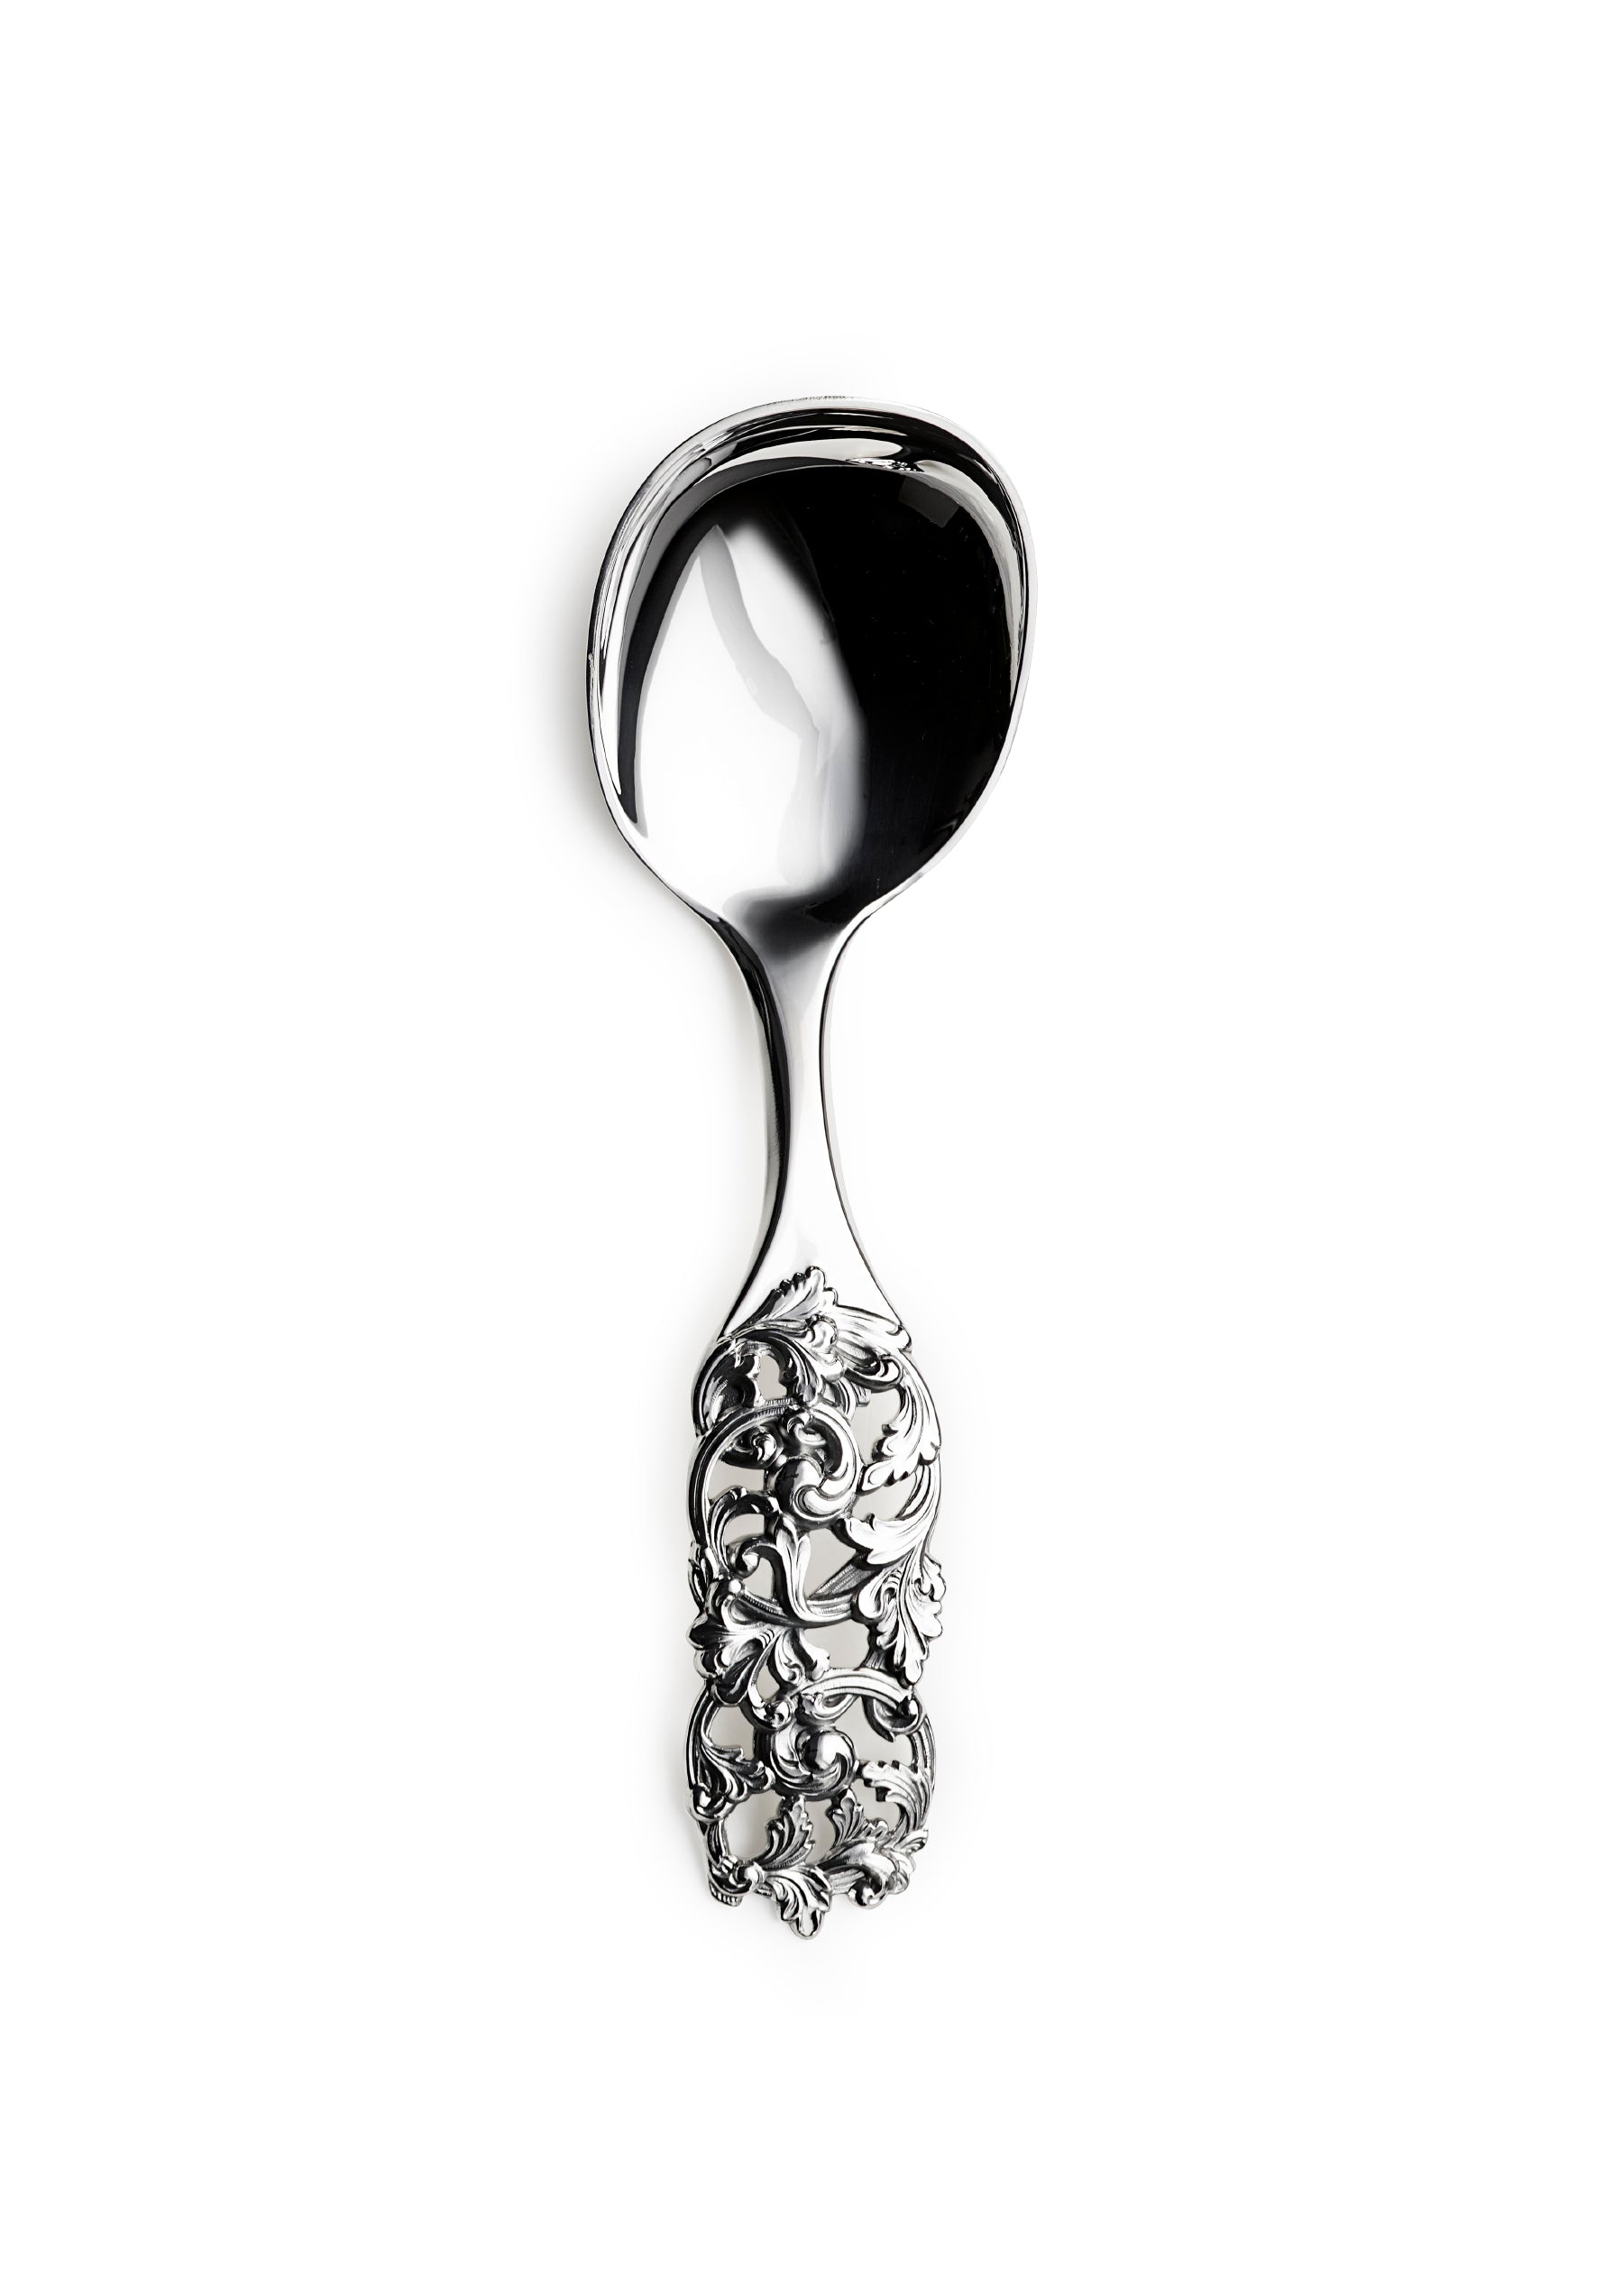 Elveseter no. 346 serving spoon